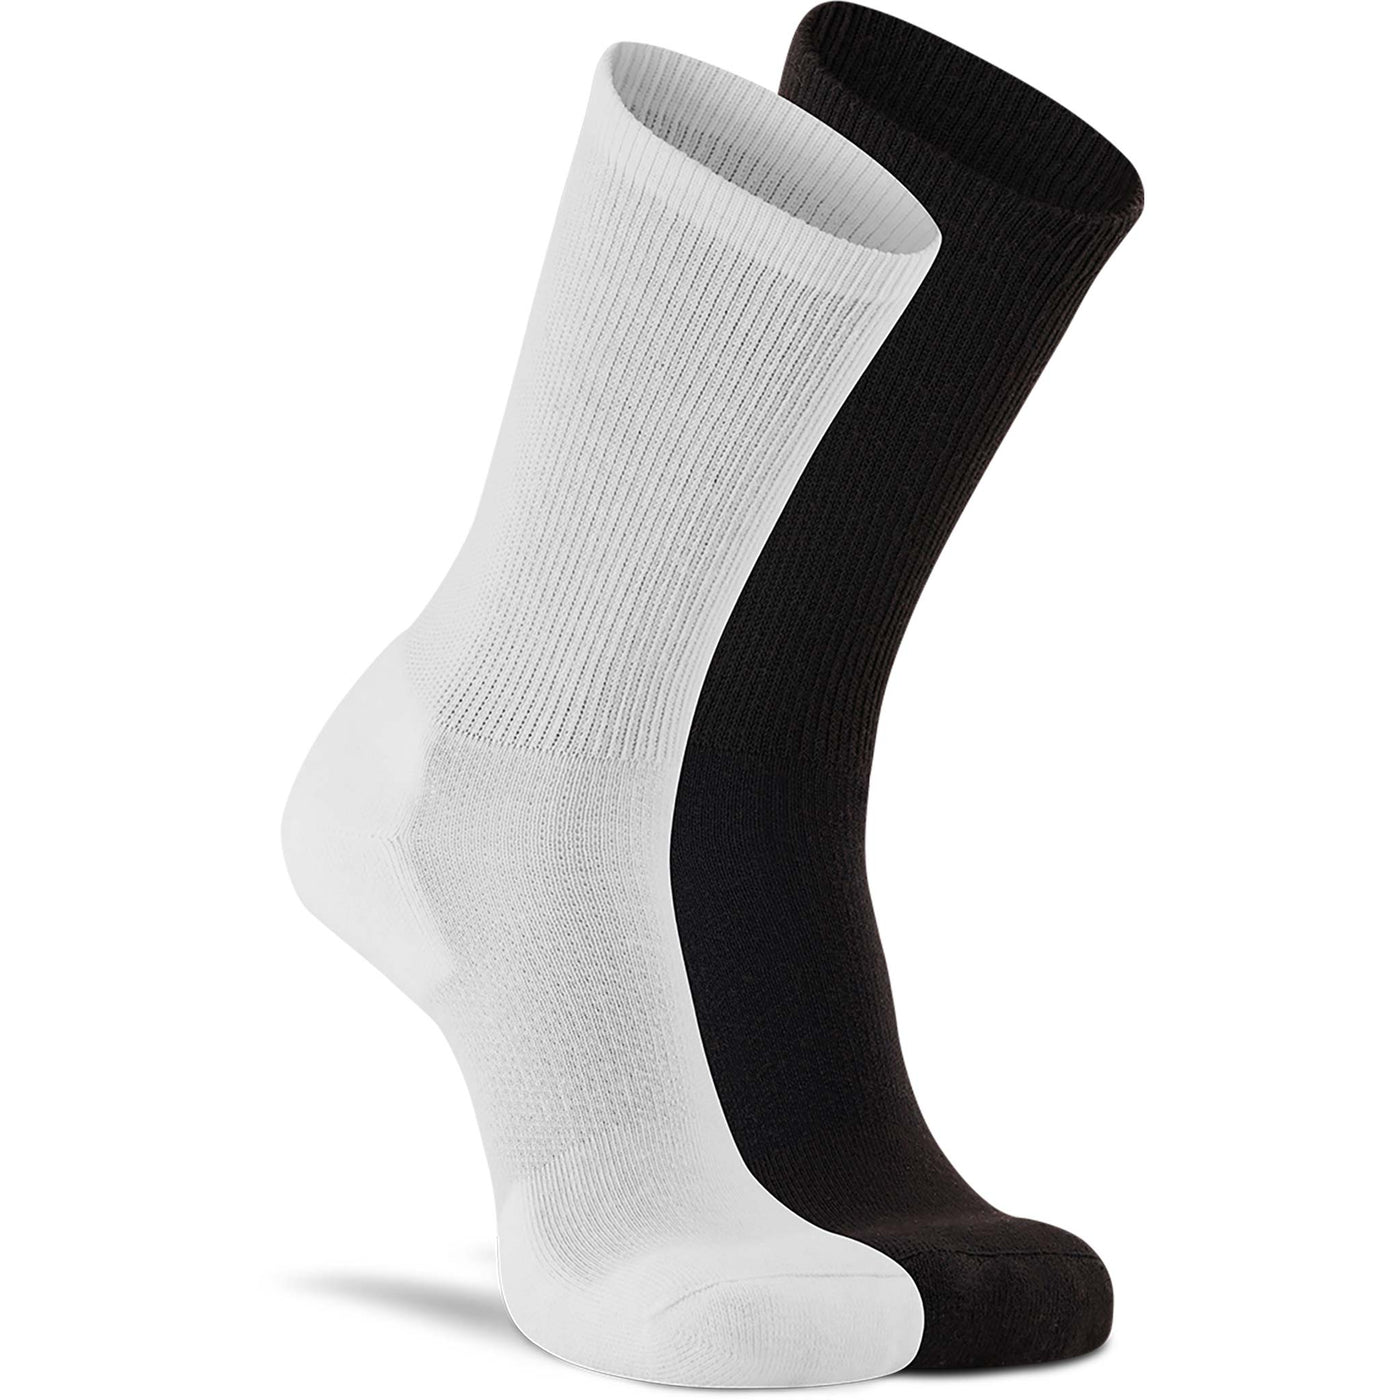 Diabetic Lightweight Crew - 2 Pack White/Black Assort Large - Fox River® Socks